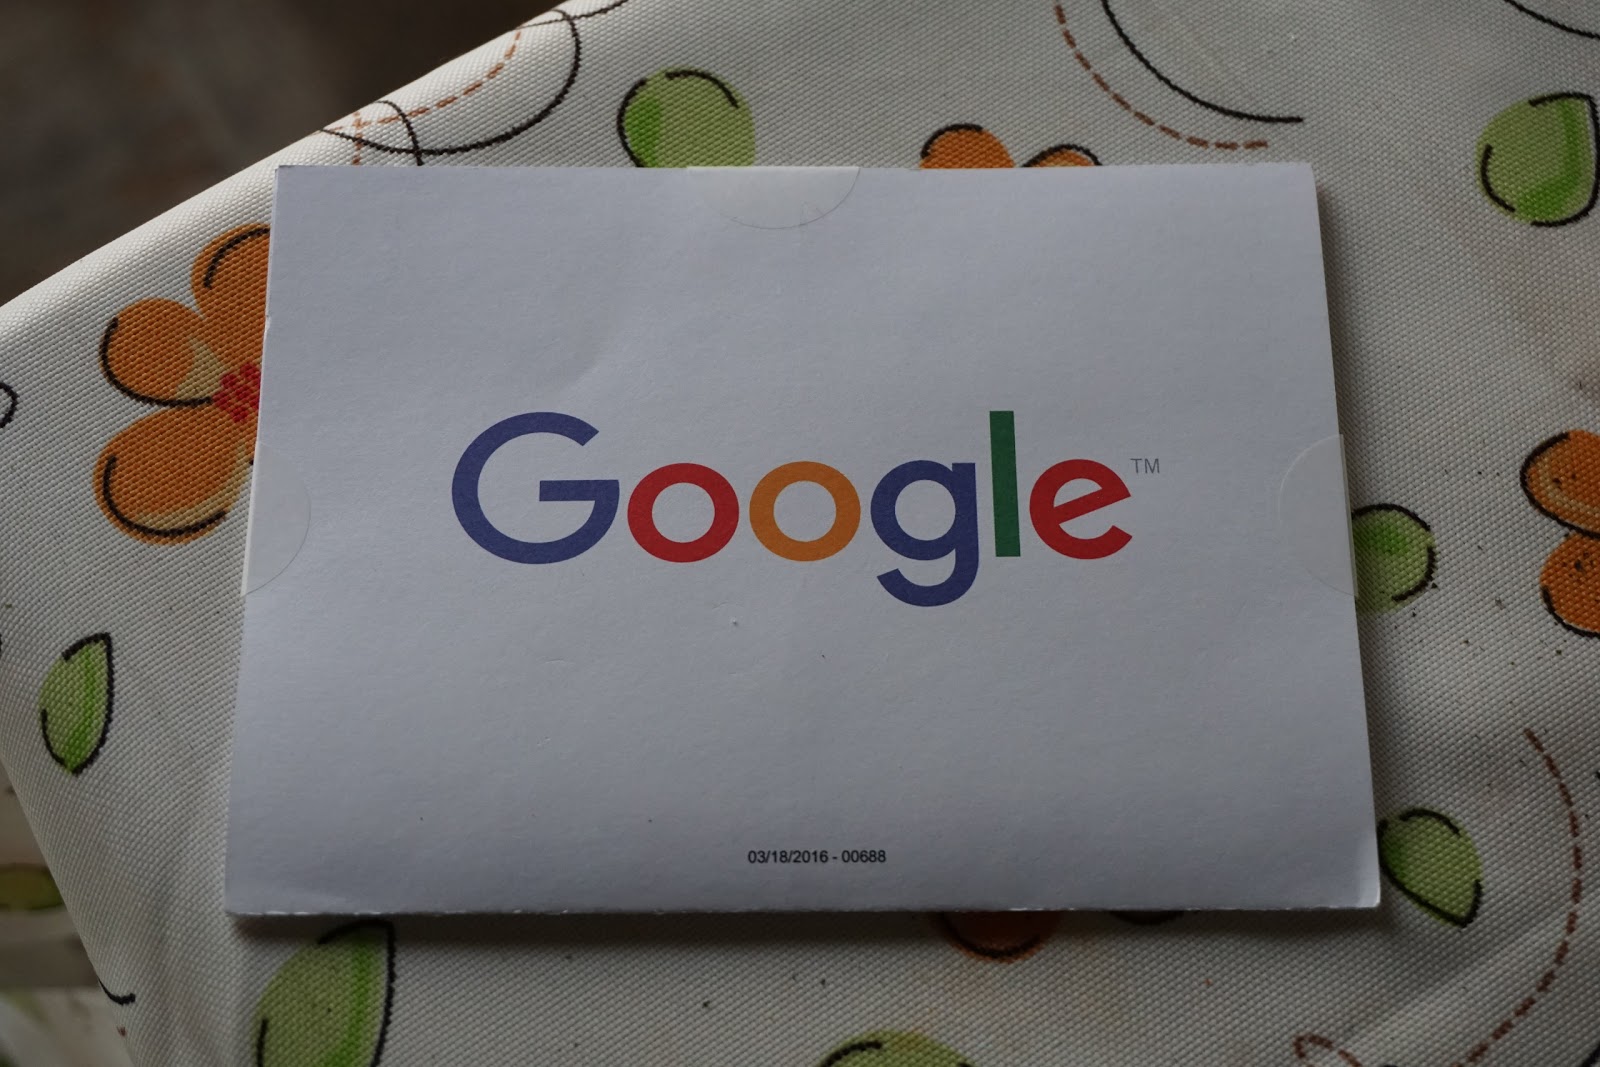 Googleアドセンスの個人識別番号が封入されたGoogleのロゴ入りの封筒